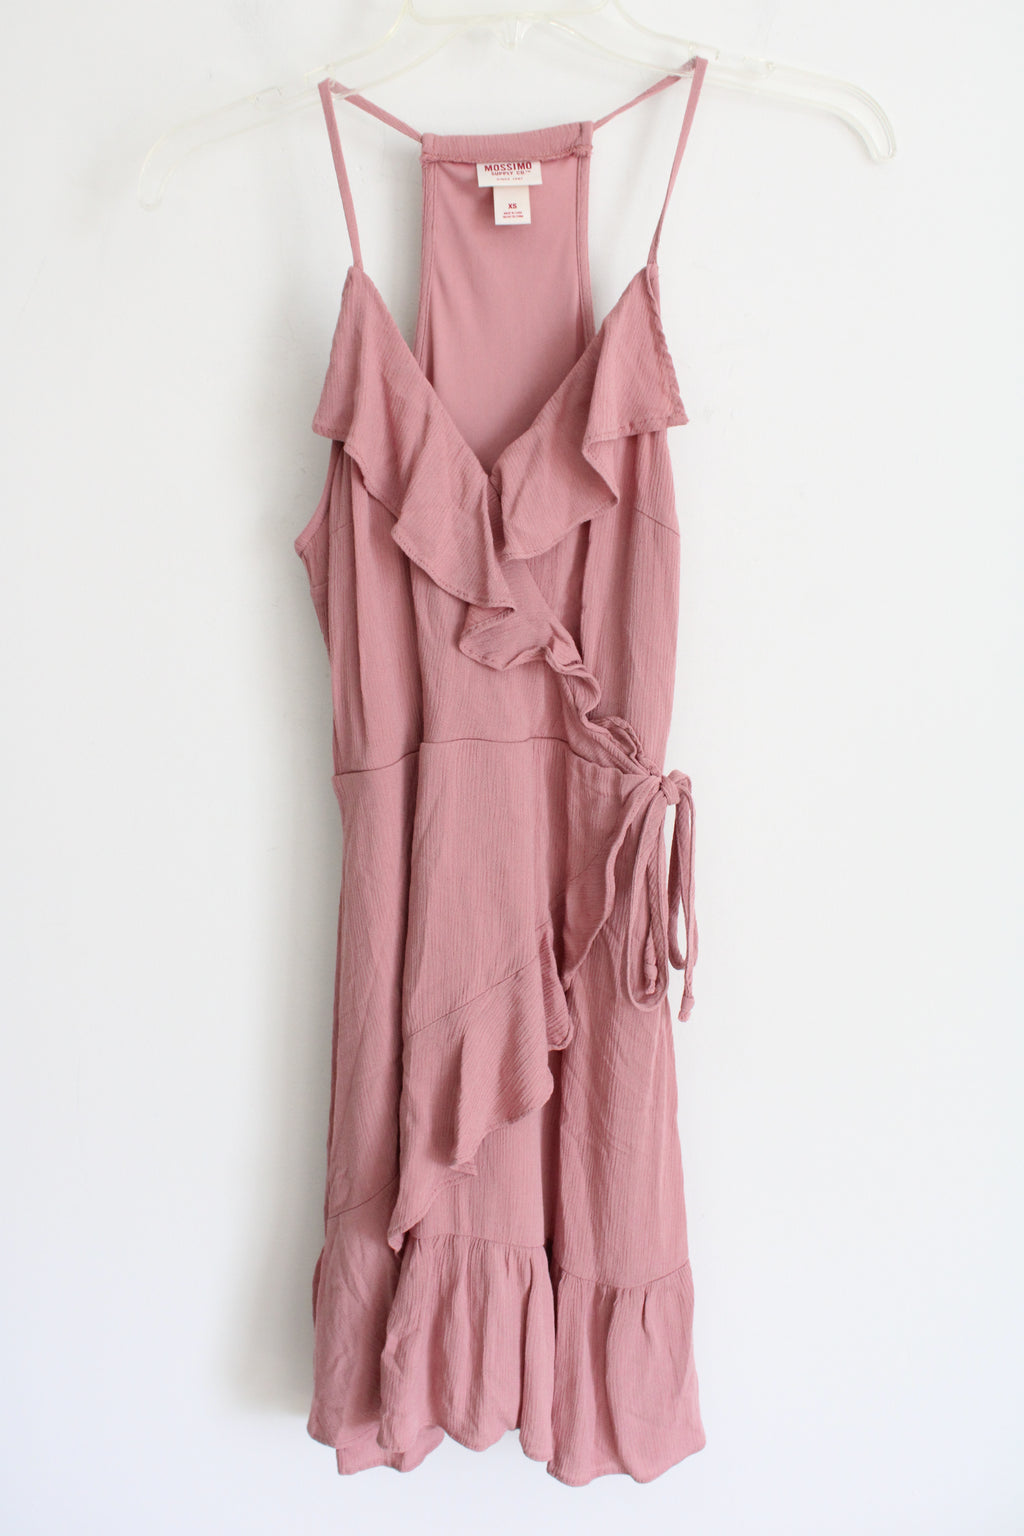 Mossimo Pink Ruffle Wrap Dress | XS